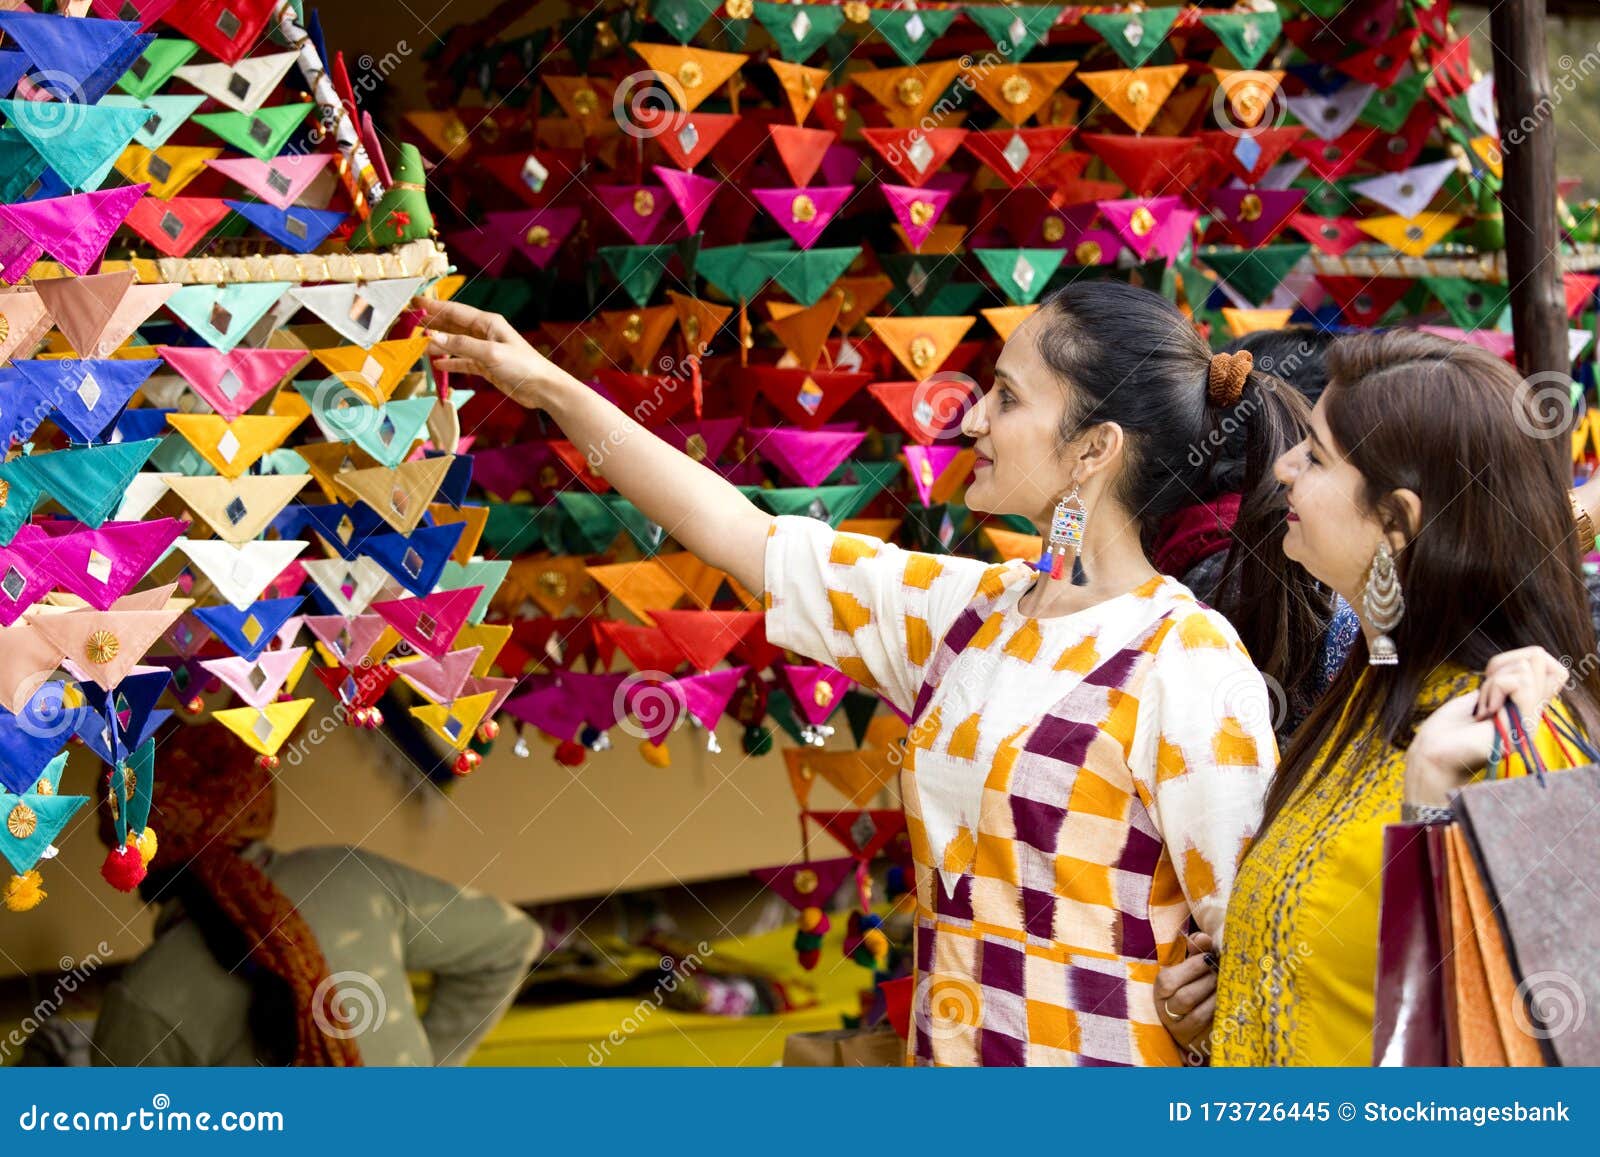 women shopping for souvenirs at surajkund mela